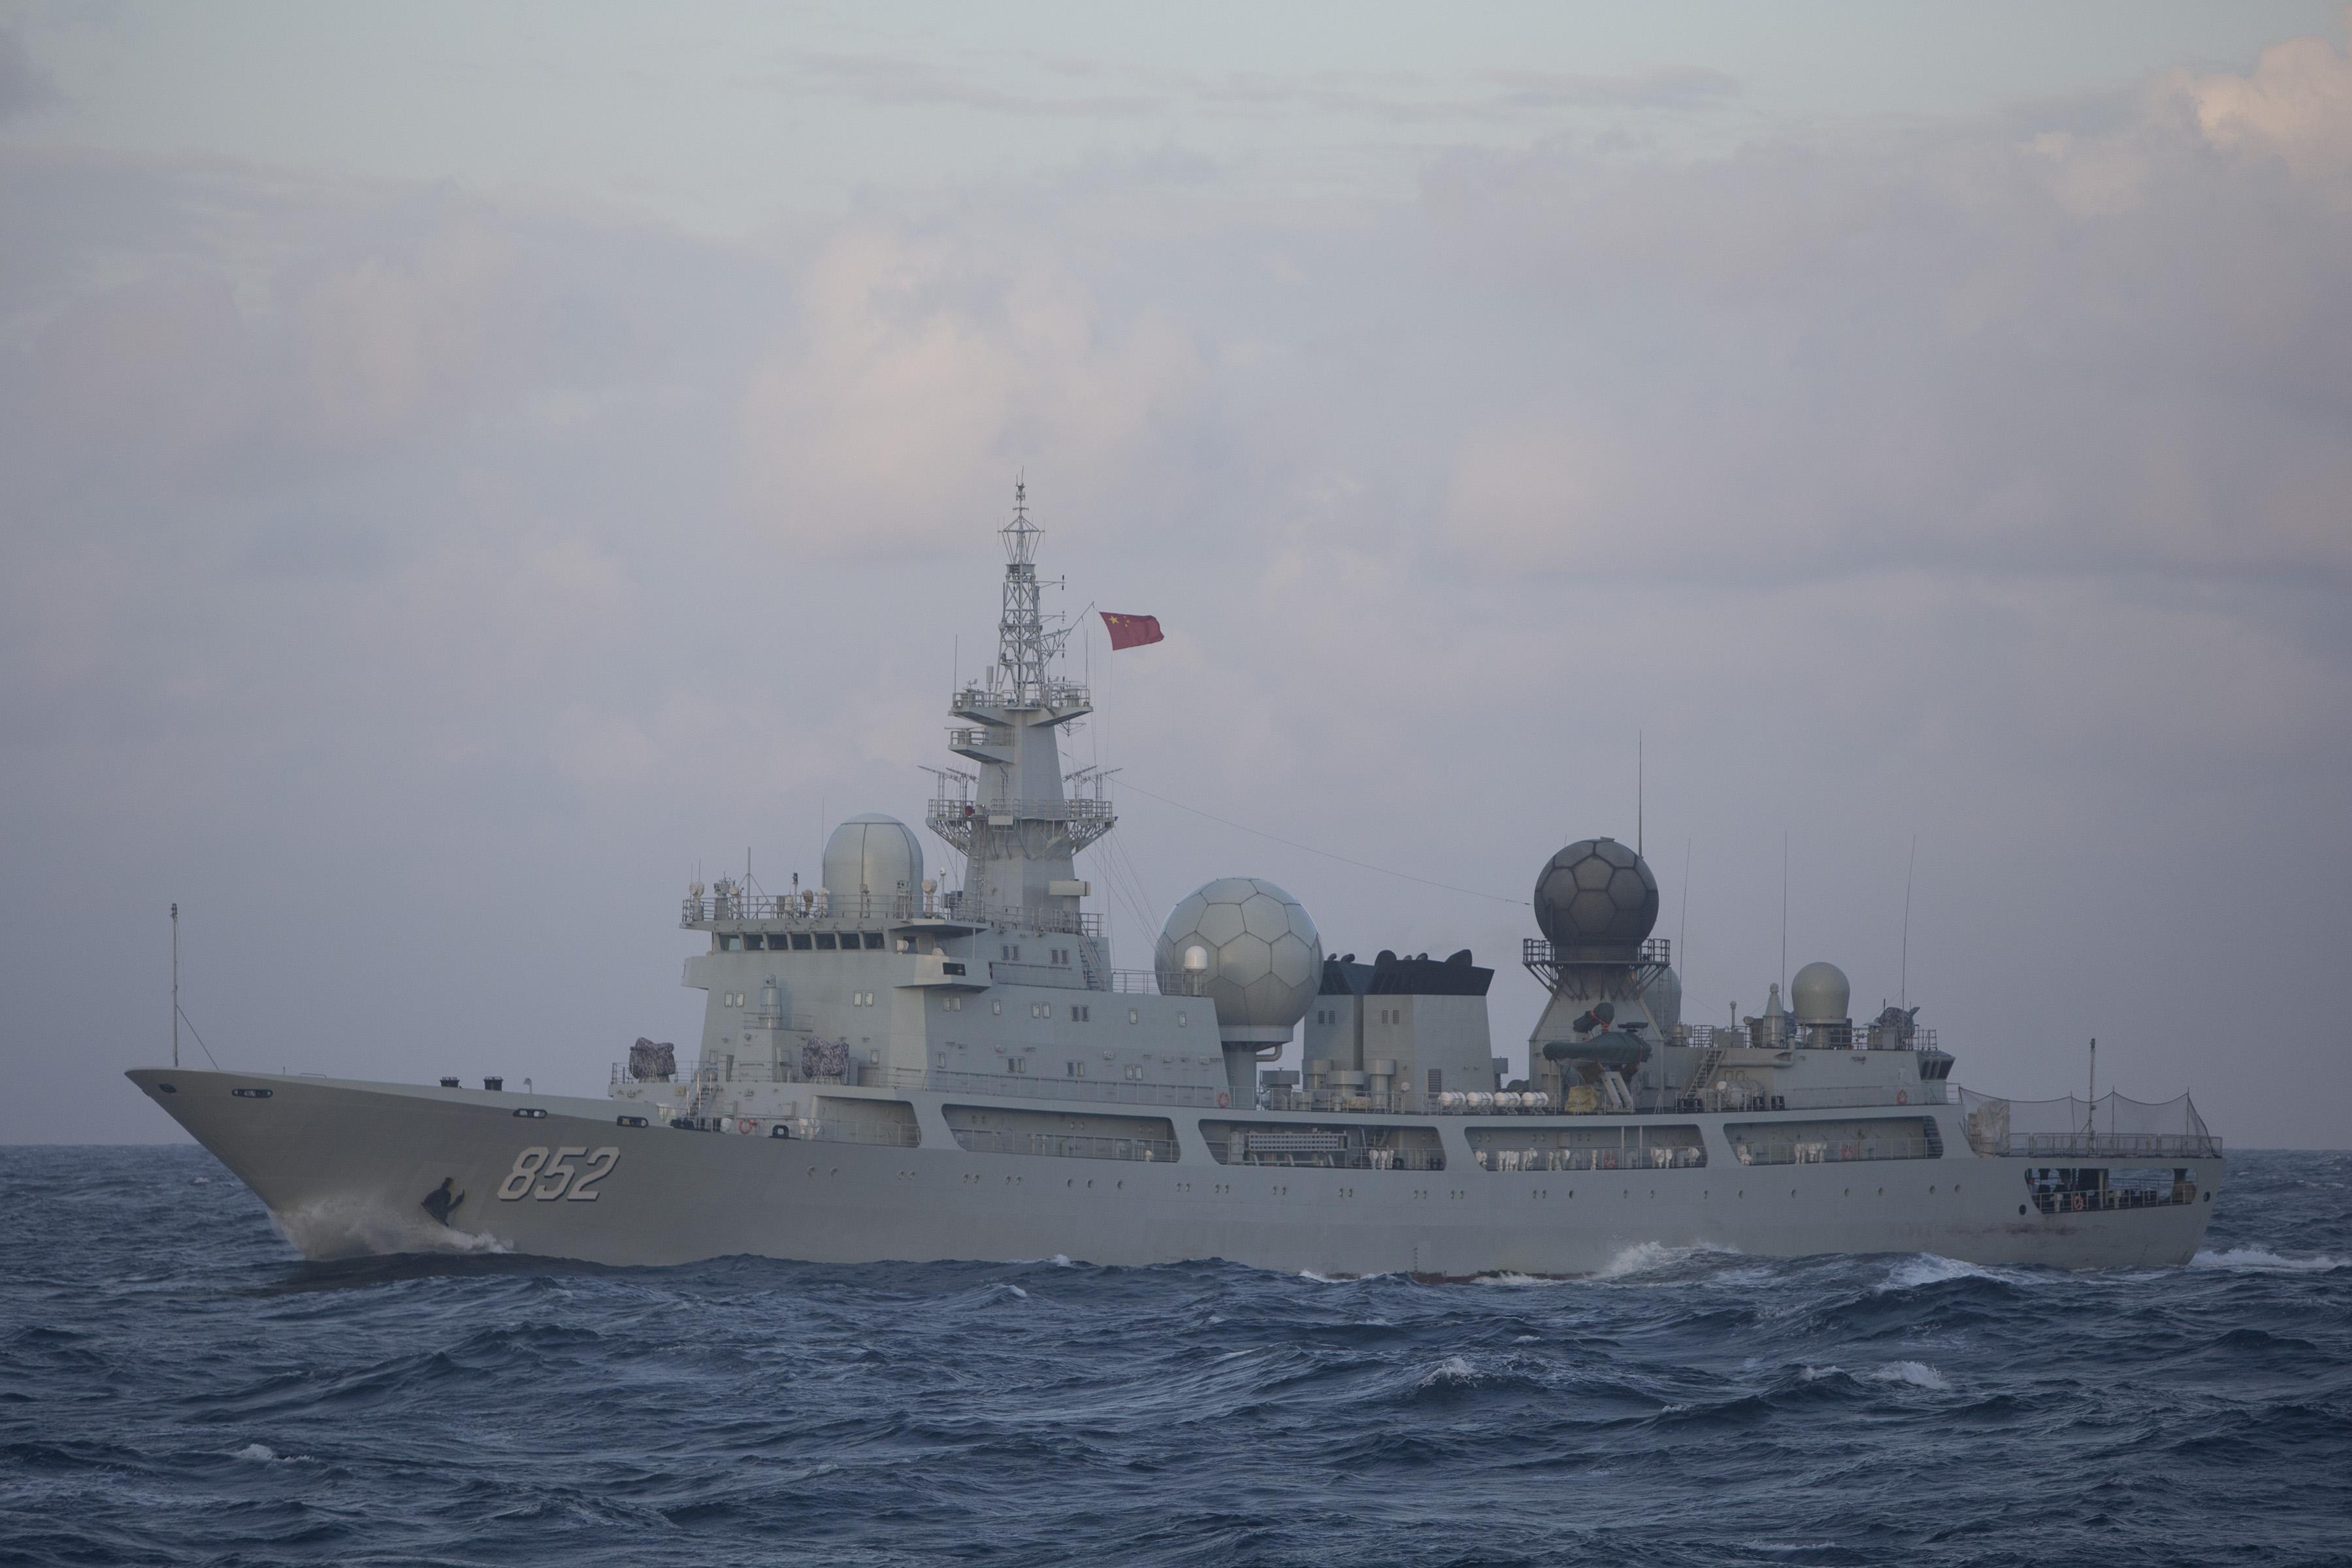 中国新电子侦察船“亮相” 强化信息化作战能力